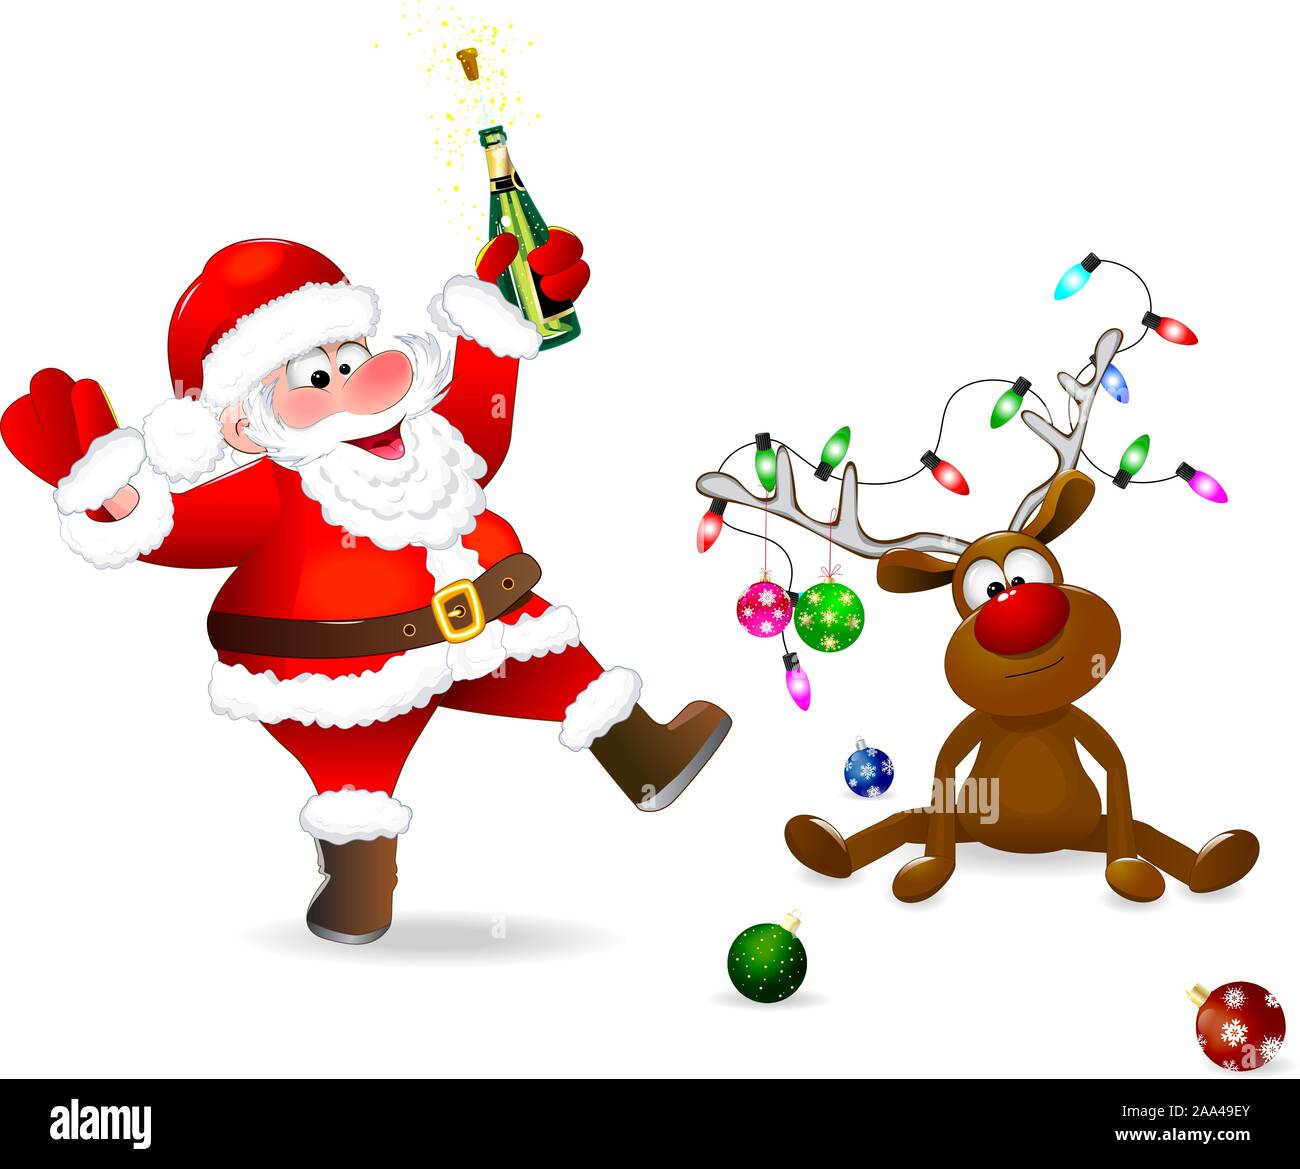 Santa Claus con una botella en su mano. El ciervo está decorado con bolas de Navidad y una guirnalda de luces. Santa y ciervos sobre un fondo blanco. Ilustración del Vector